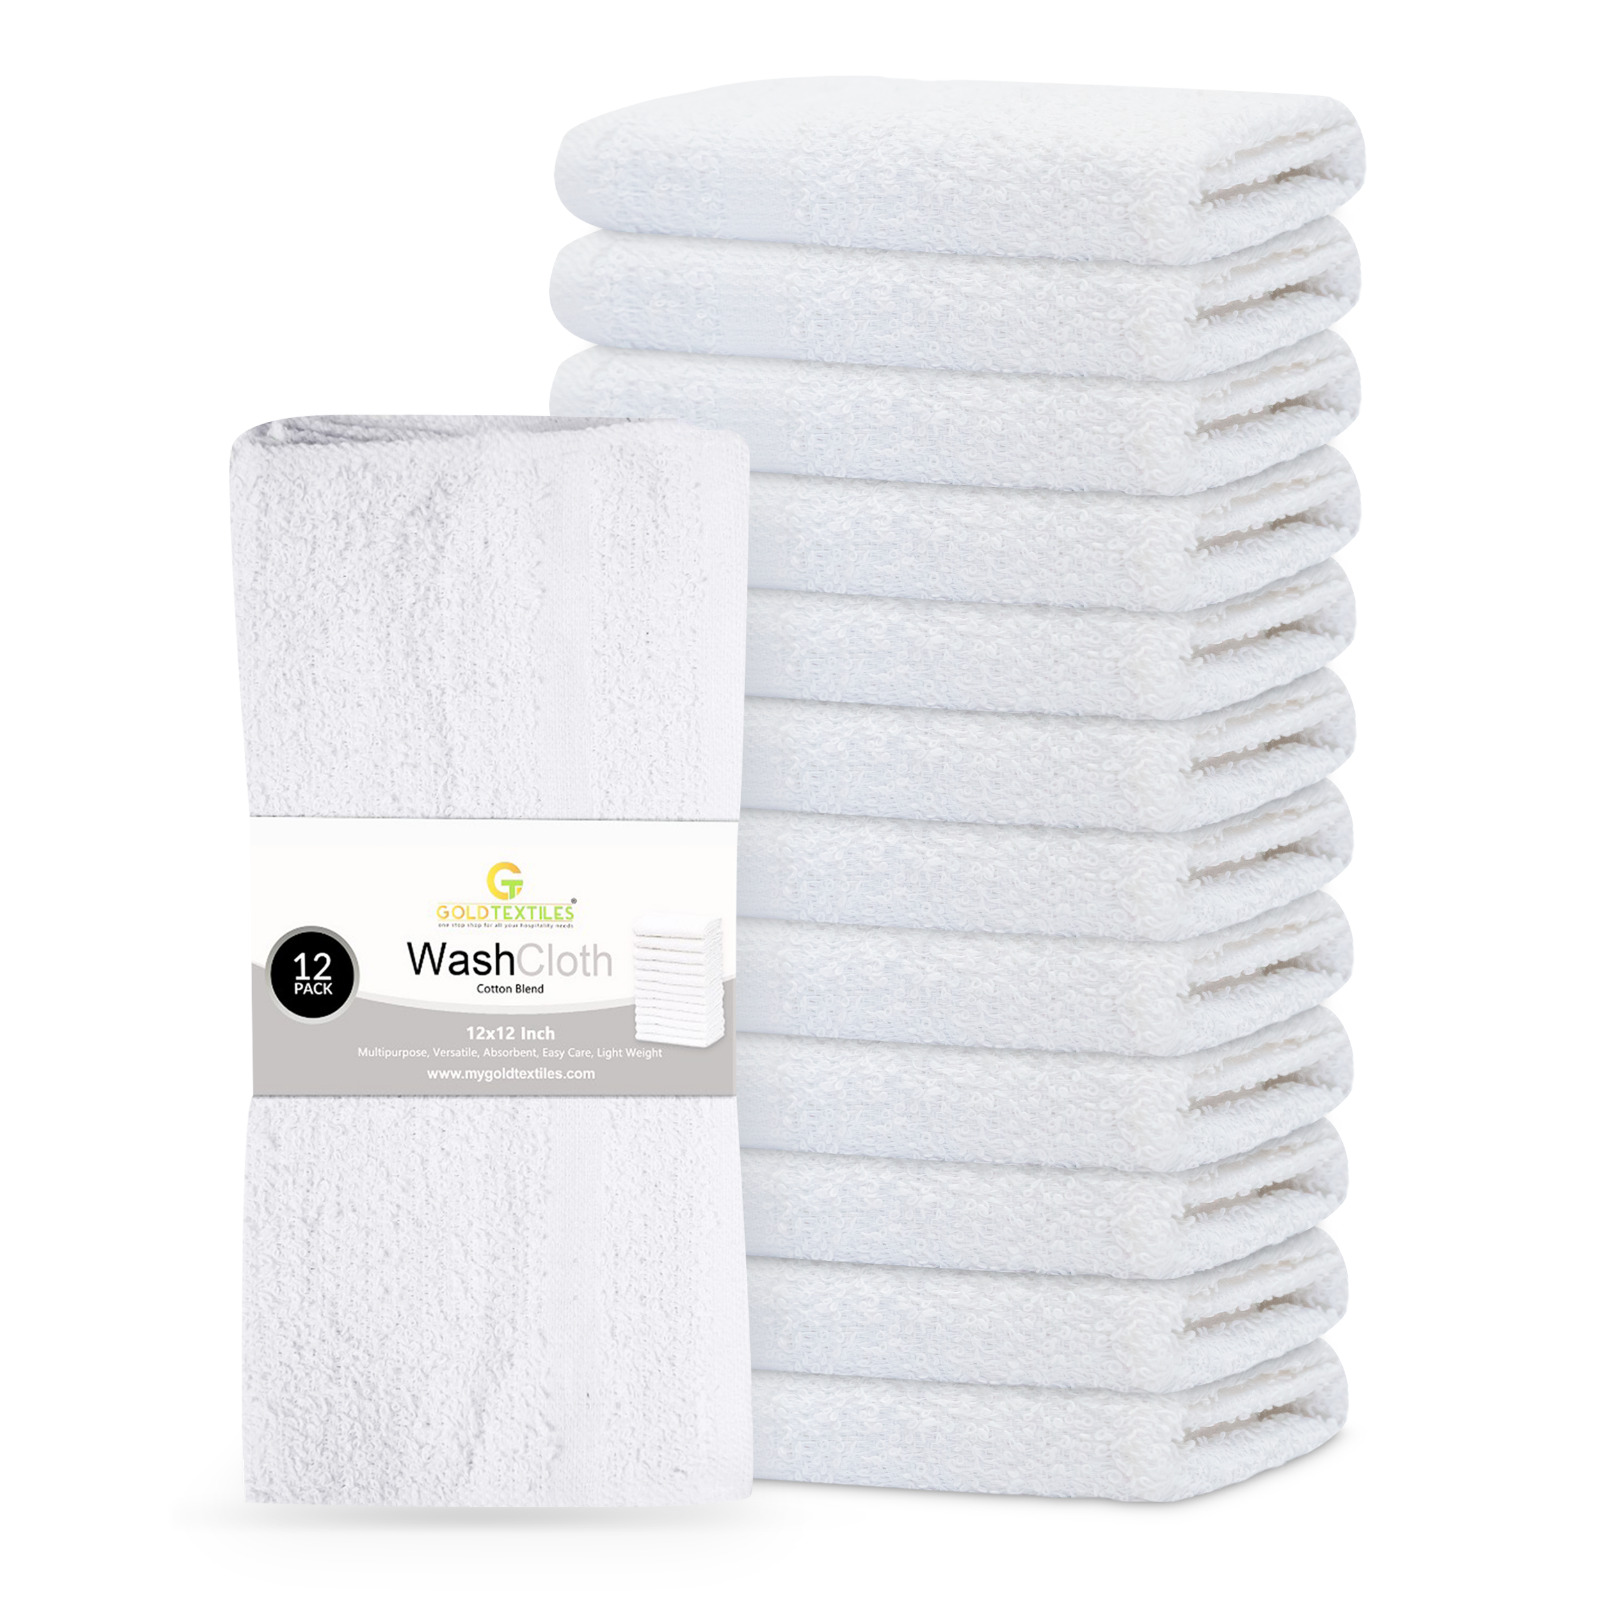 Wash Cloth Towel Set 12x12 Cotton Blend Bulk Pack 12,24,48,60,120,480,600 Towels